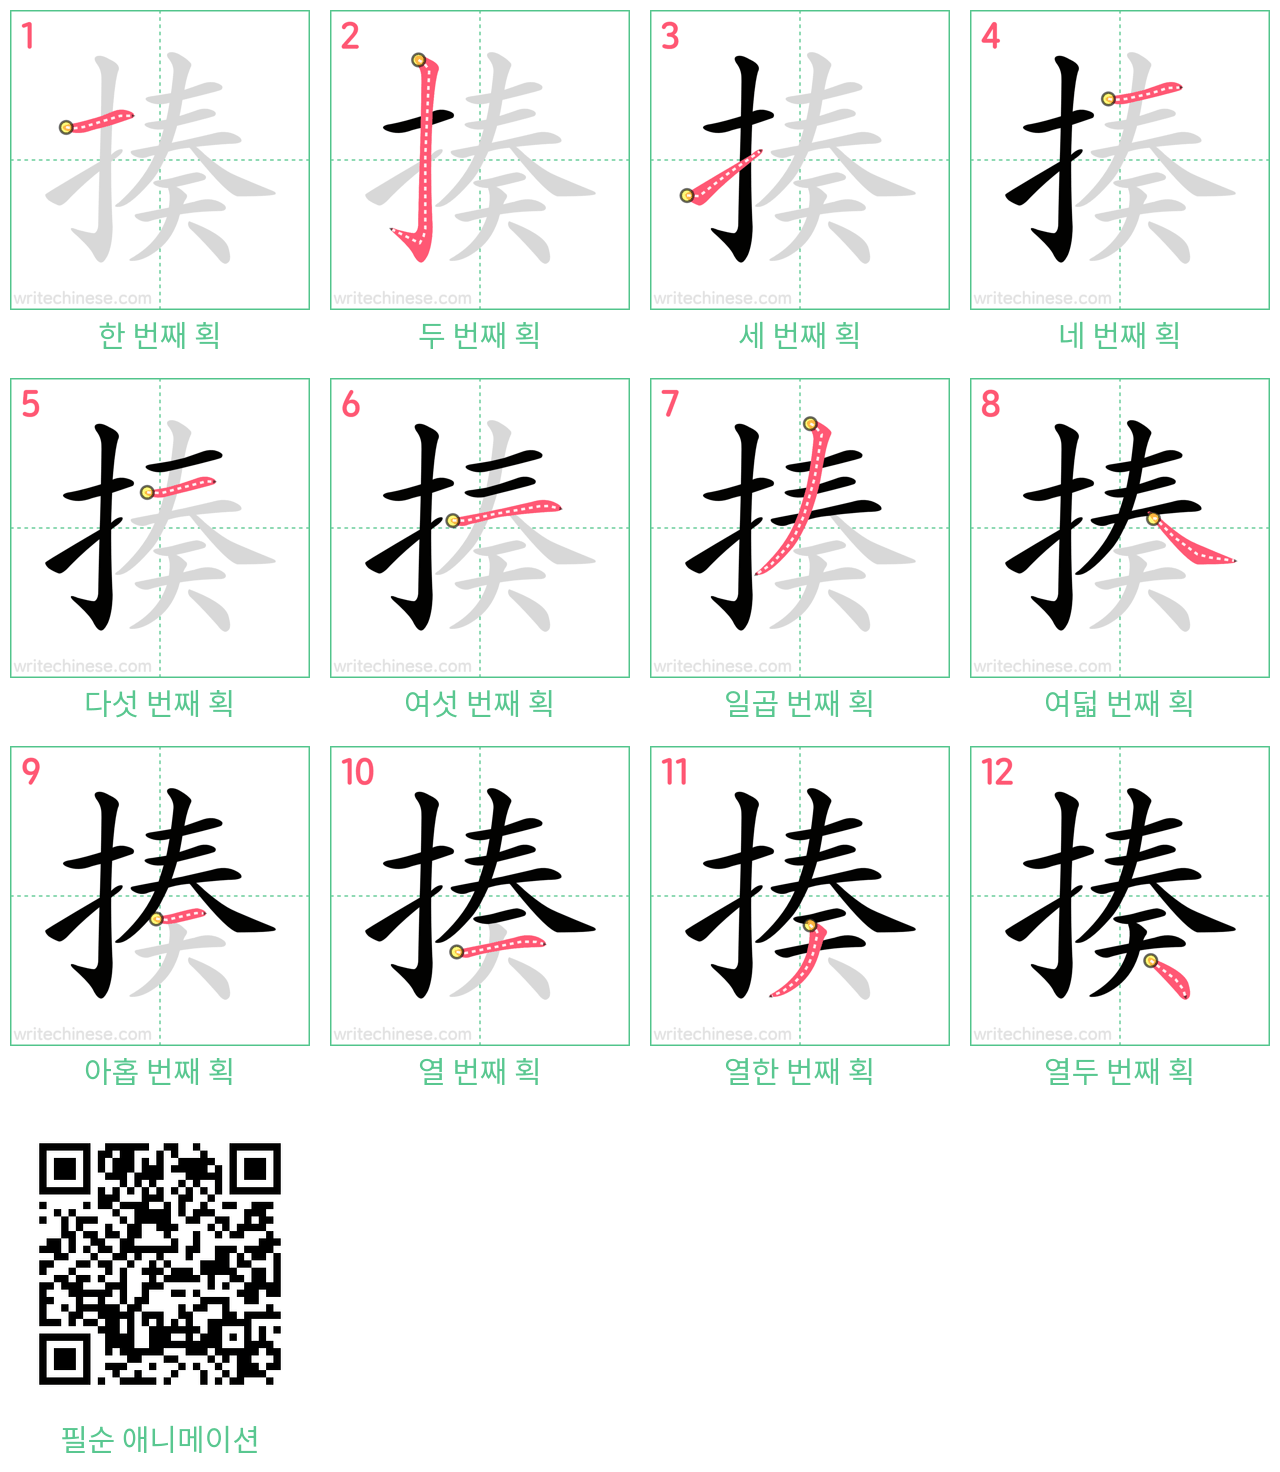 揍 step-by-step stroke order diagrams